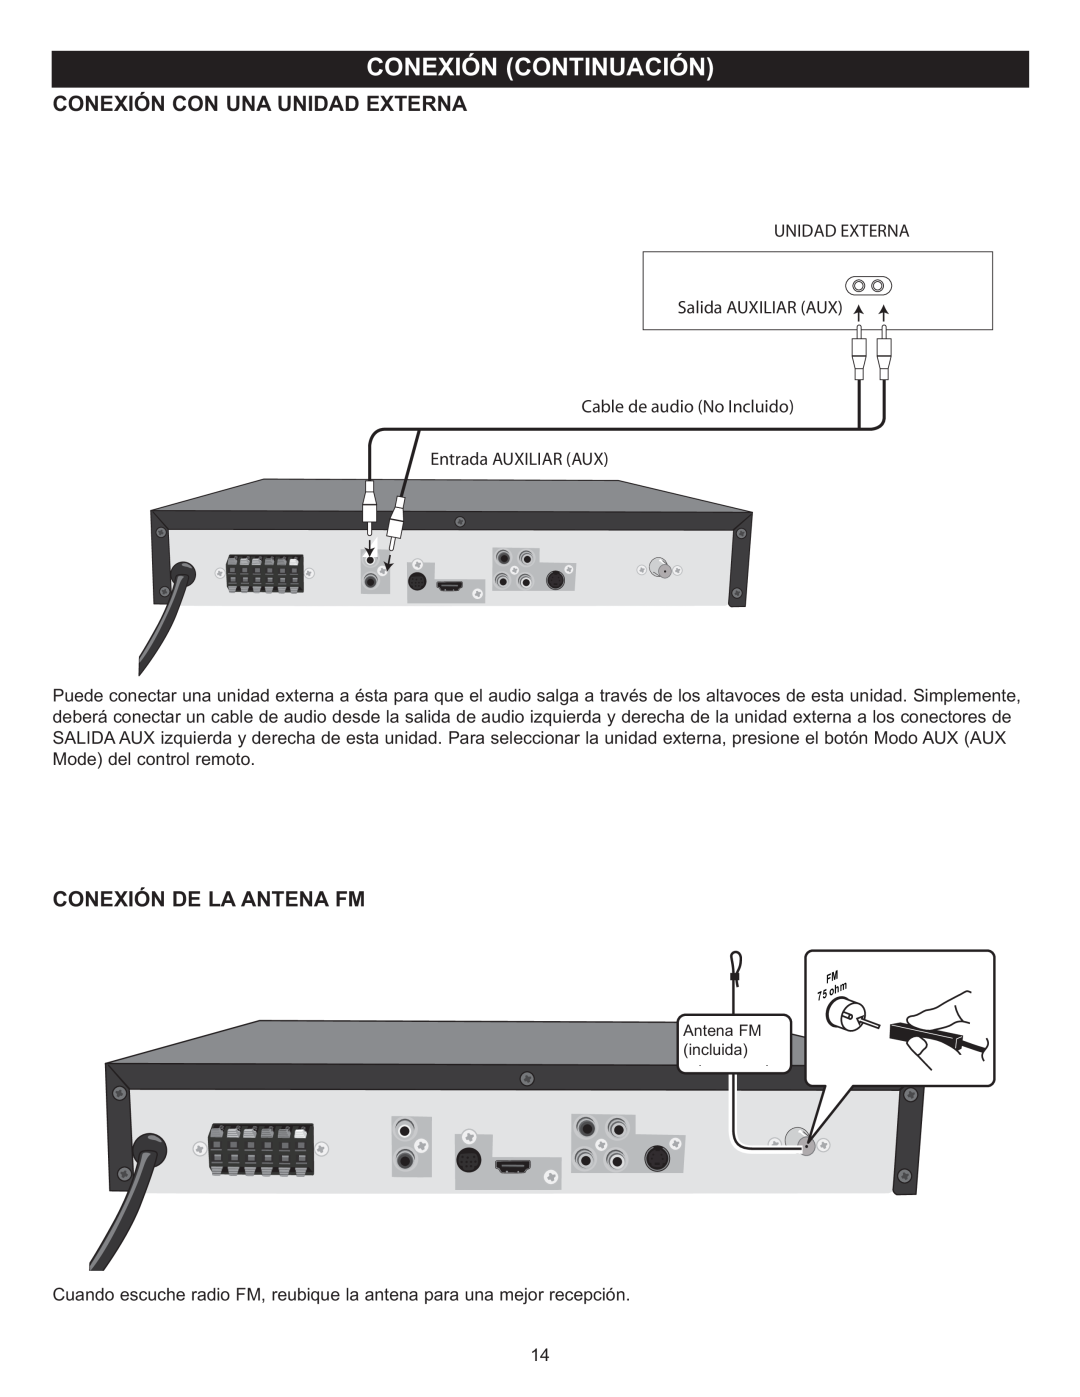 Memorex MIHT5005 manual Conexión Con Una Unidad Externa, Conexión De La Antena Fm, UNIDAD EXTERNA Salida AUXILIAR AUX 